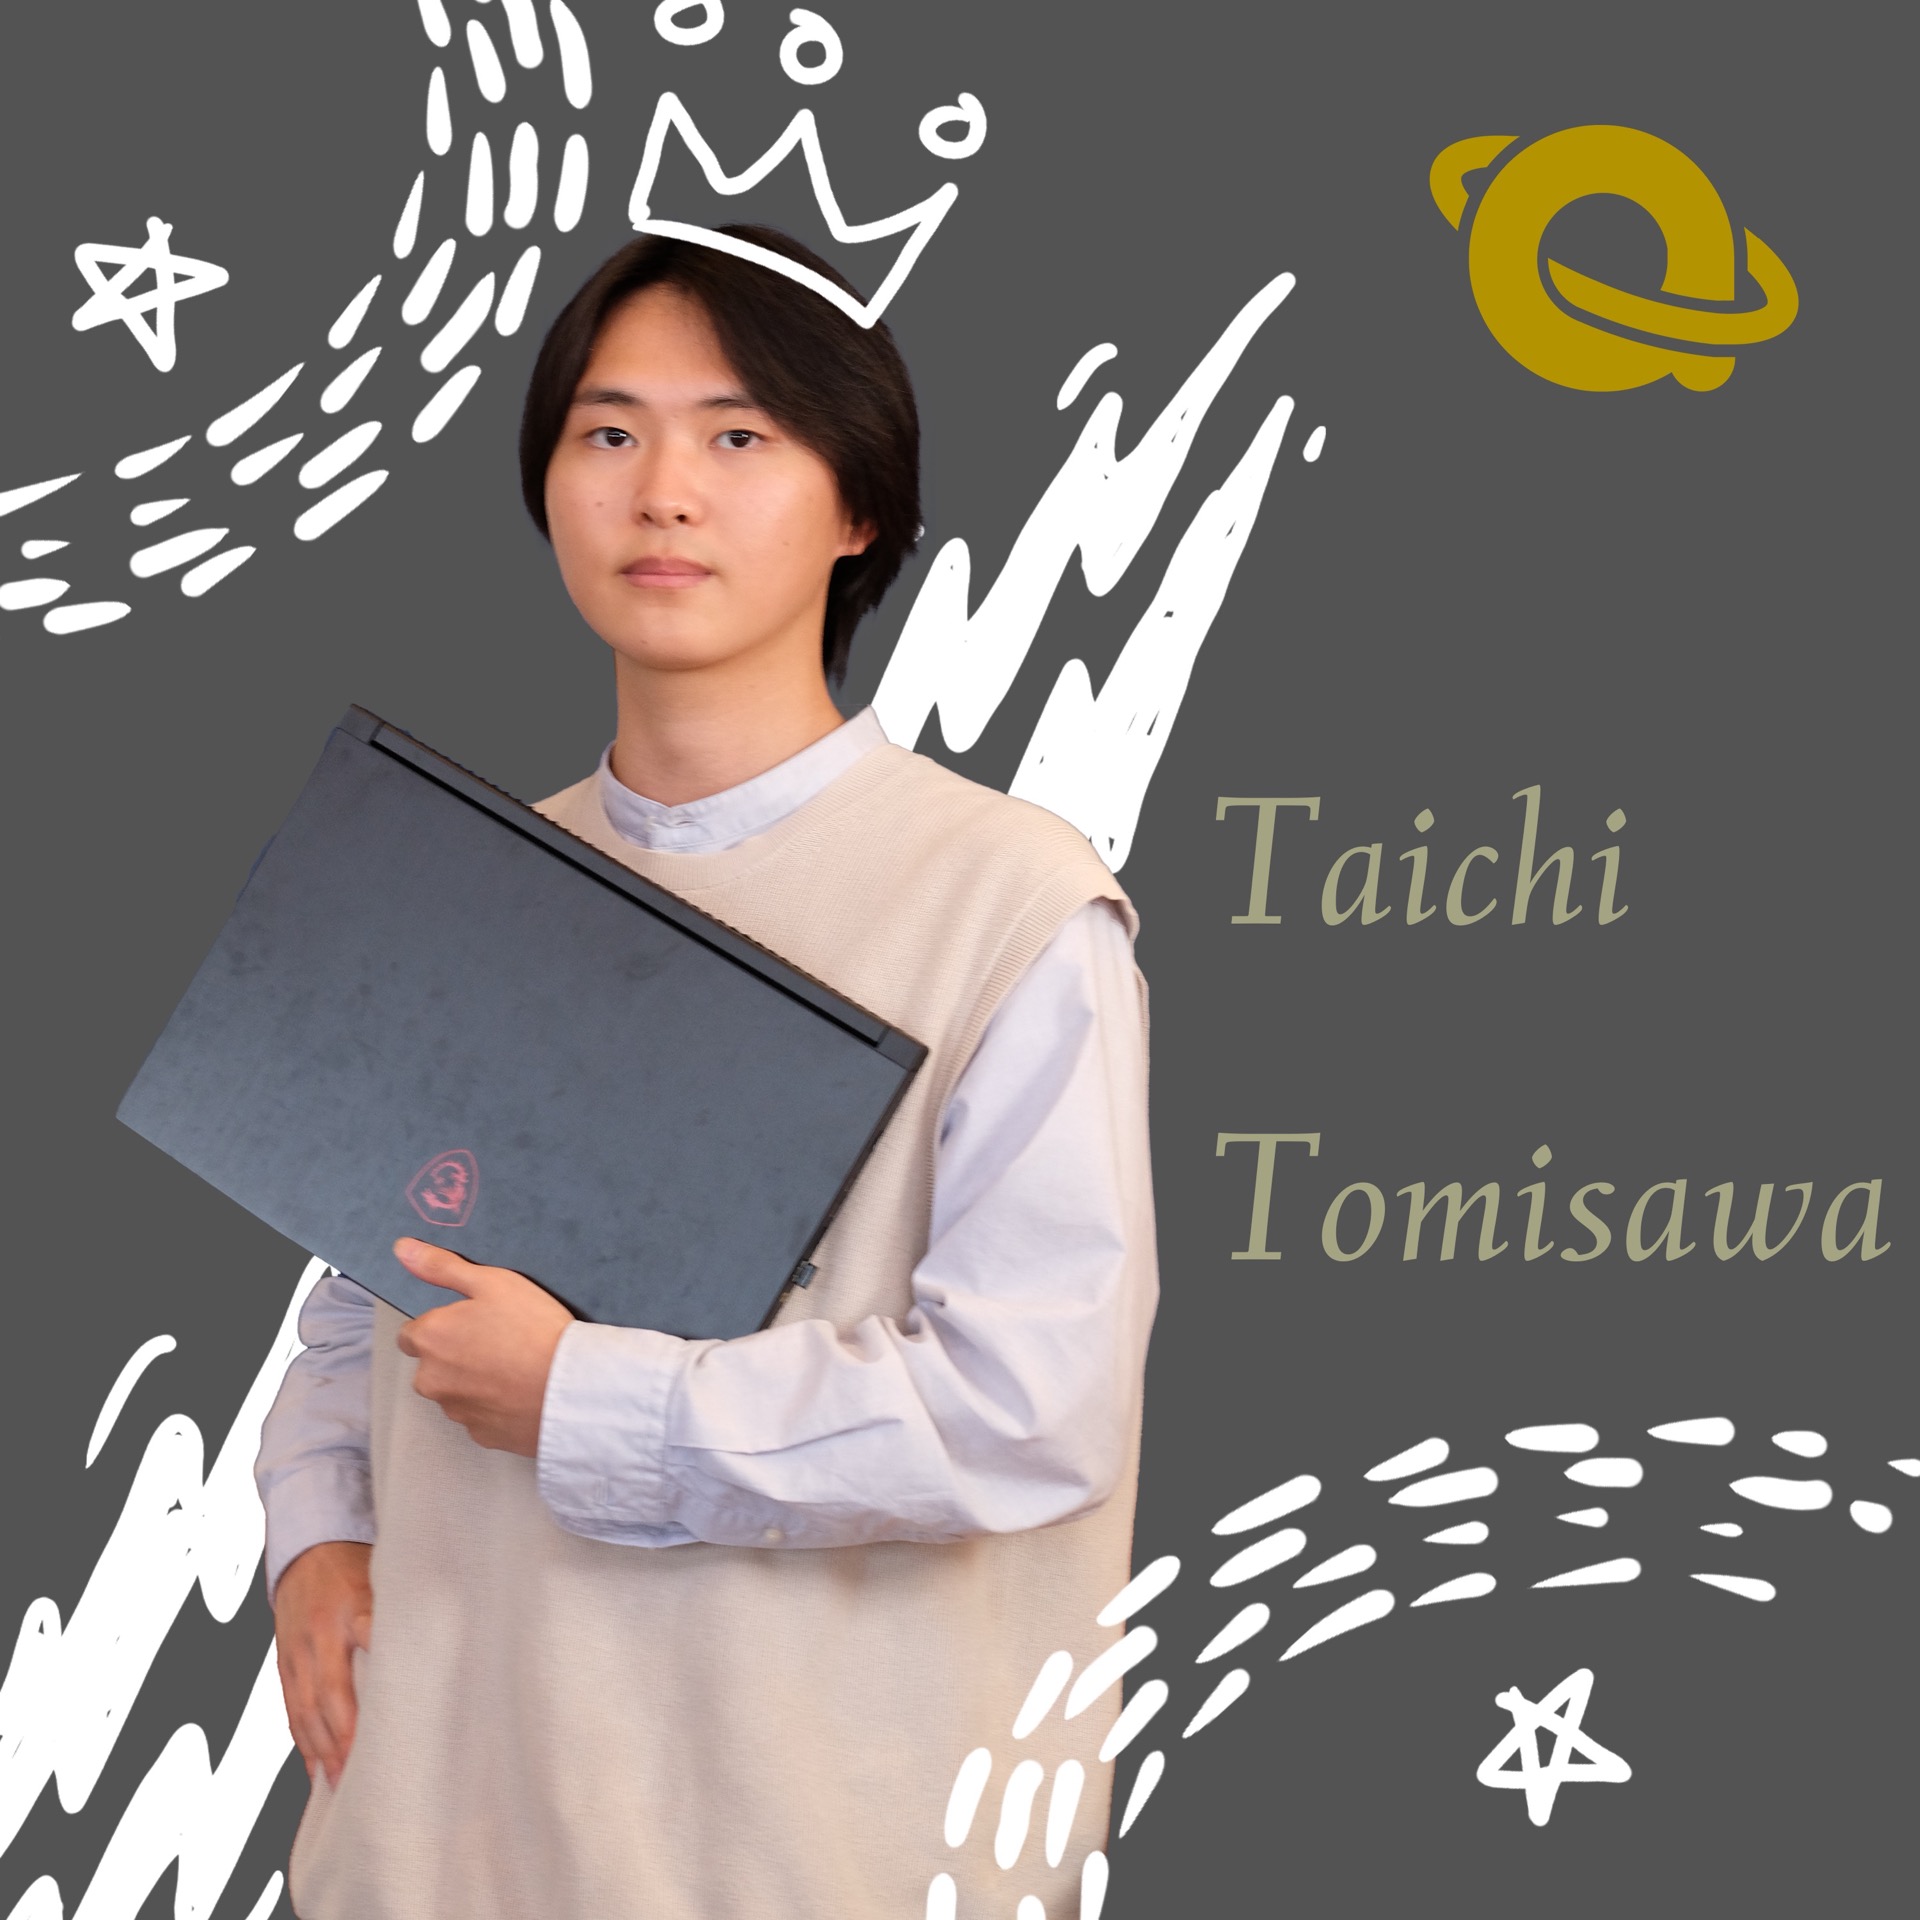 Taichi Tomisawa